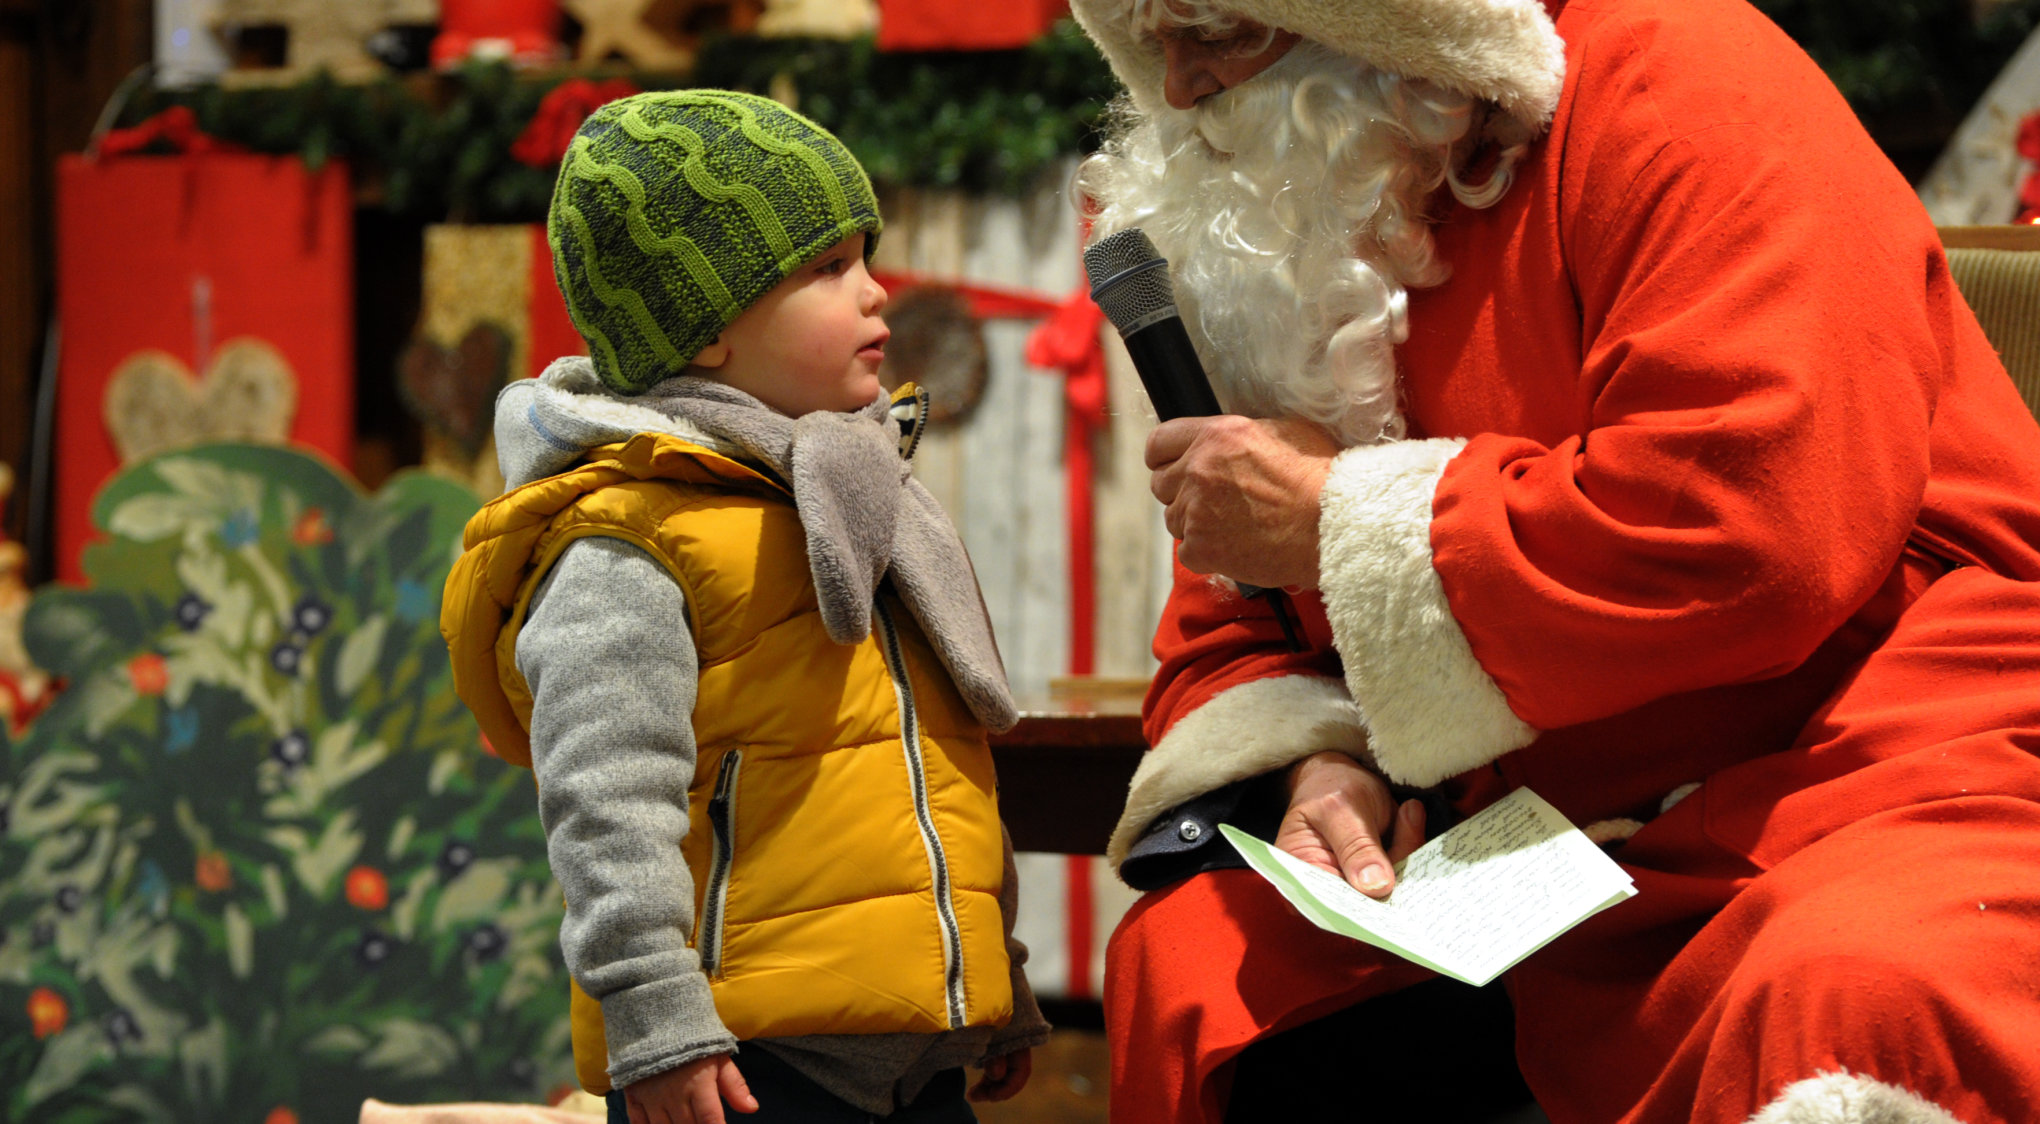 Täglich um 17 Uhr besucht der Weihnachtsmann die Kinder auf der Weihnachtsmarktbühne.